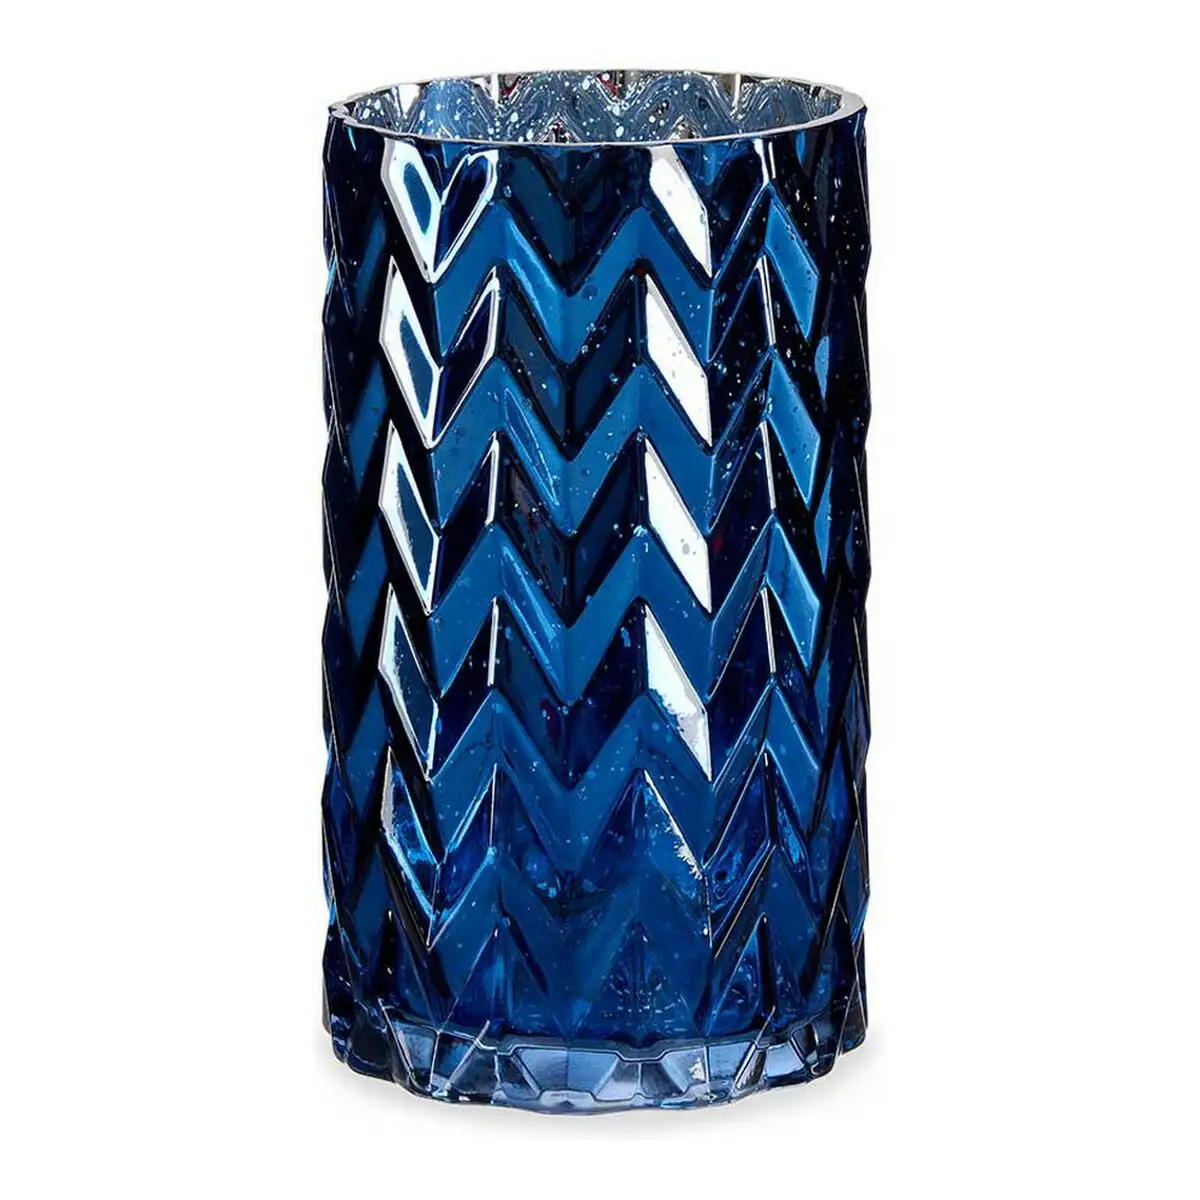 Vase taille epis verre bleu 11 3 x 19 5 x 11 3 cm _5202. Bienvenue chez DIAYTAR SENEGAL - Où Chaque Détail Fait la Différence. Découvrez notre sélection méticuleuse et choisissez des articles qui répondent à vos exigences.